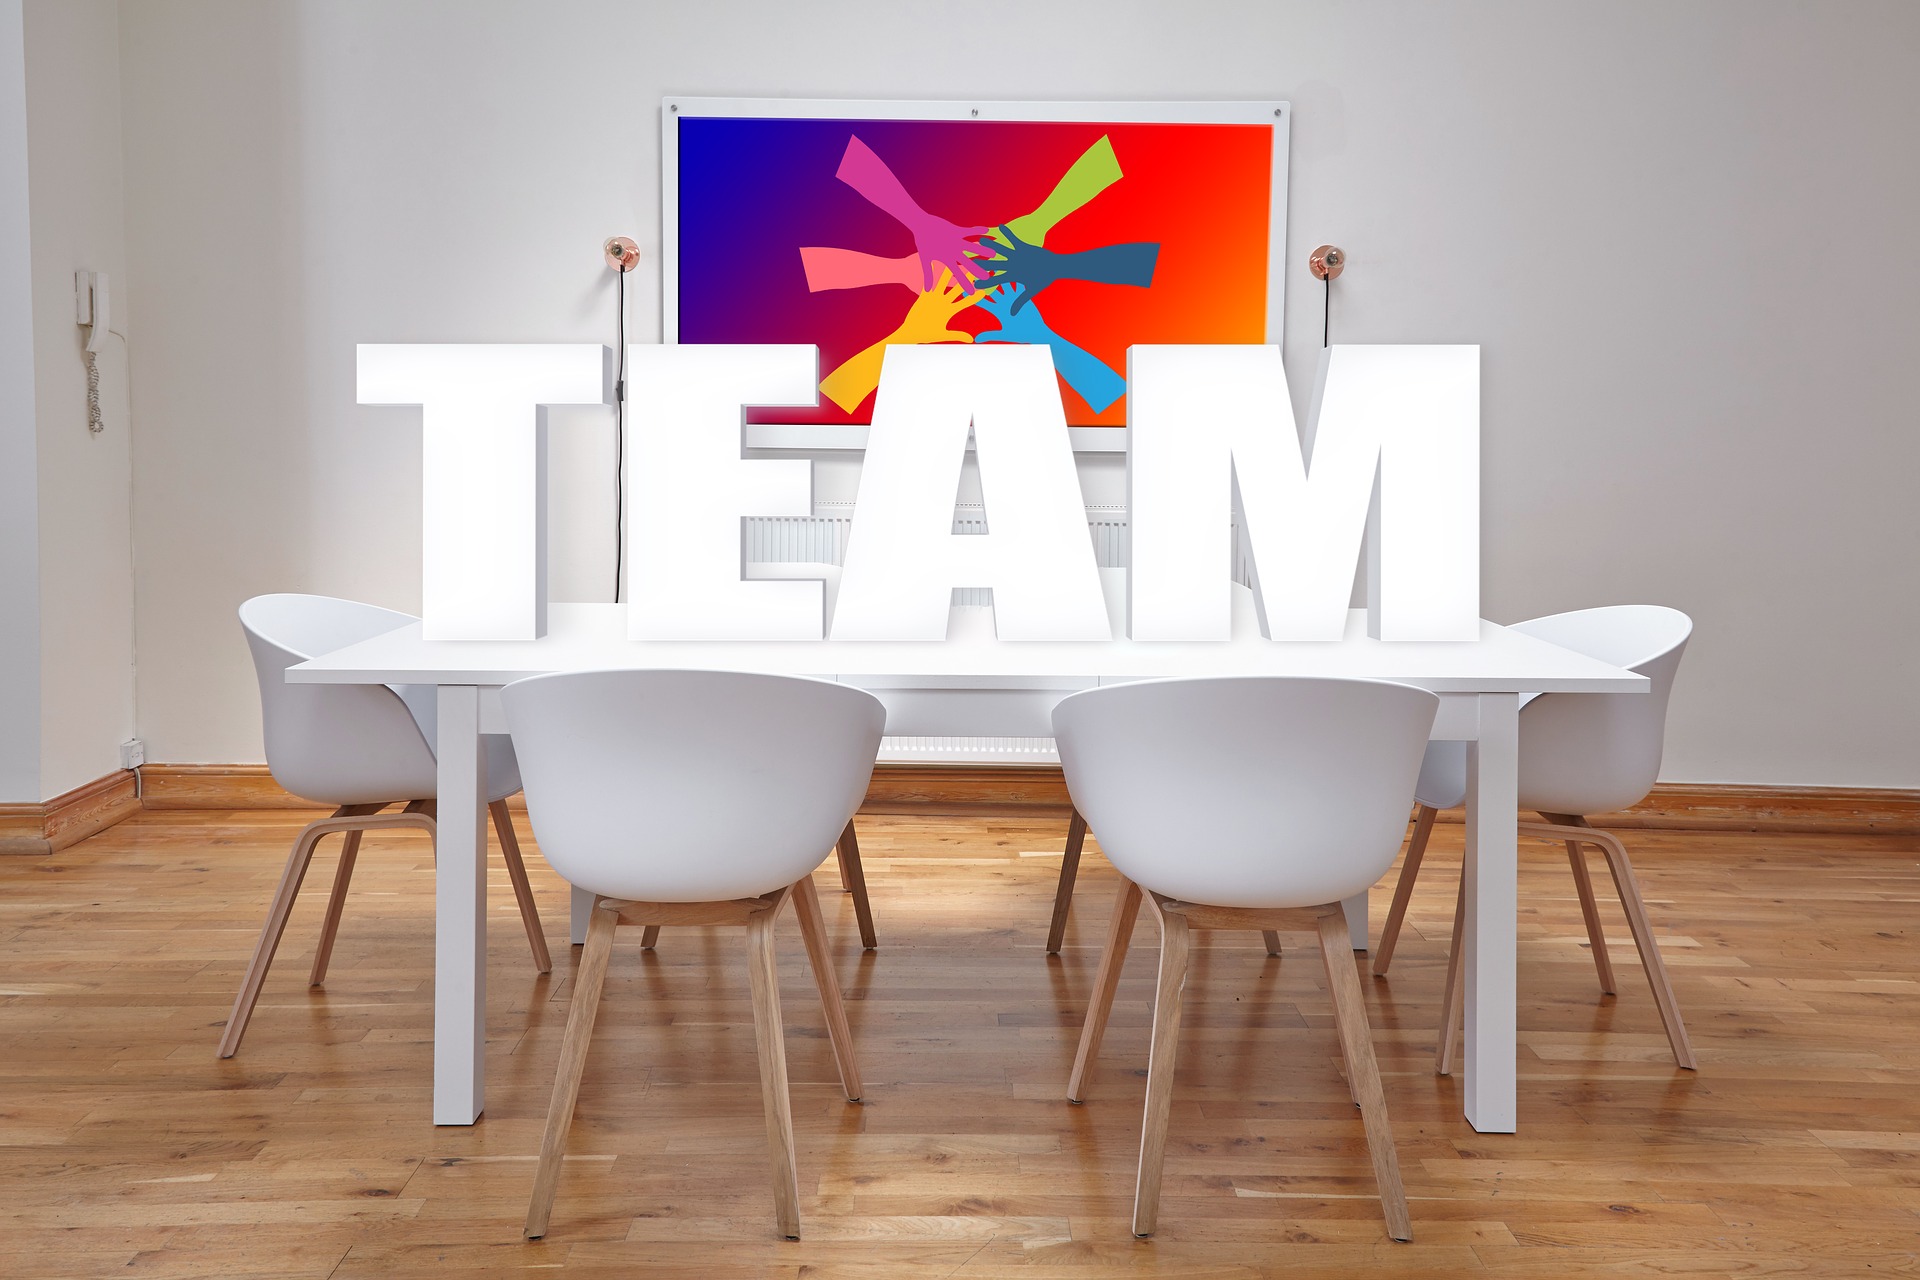 Imagen digital de unas letras grandes que dicen "TEAM" sobre una mesa